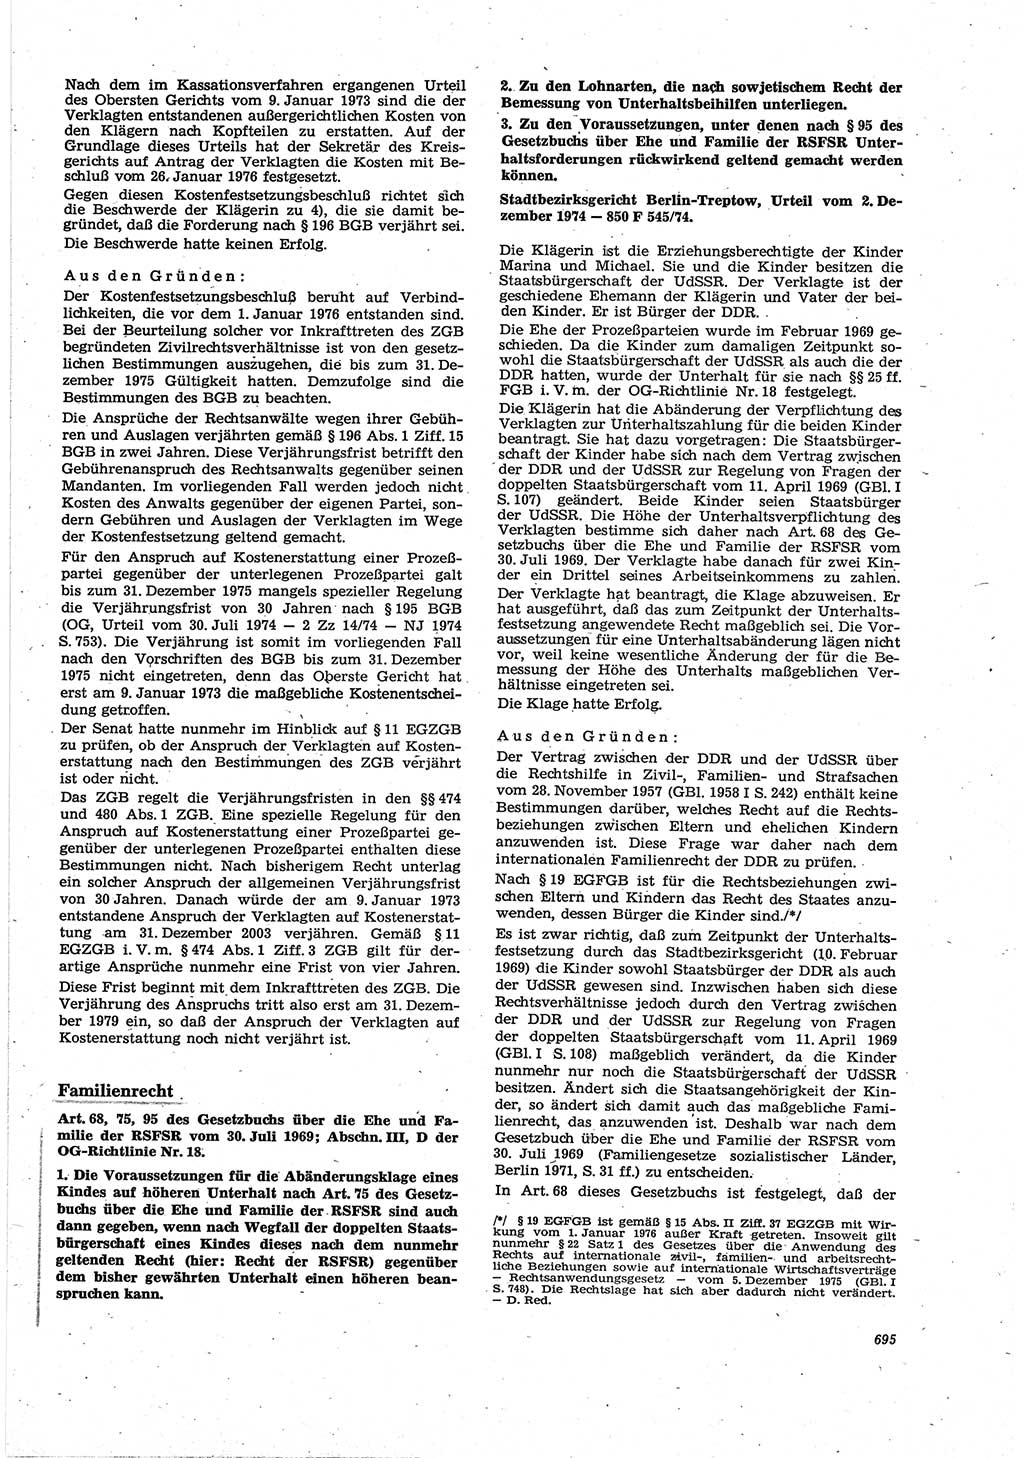 Neue Justiz (NJ), Zeitschrift für Recht und Rechtswissenschaft [Deutsche Demokratische Republik (DDR)], 30. Jahrgang 1976, Seite 695 (NJ DDR 1976, S. 695)